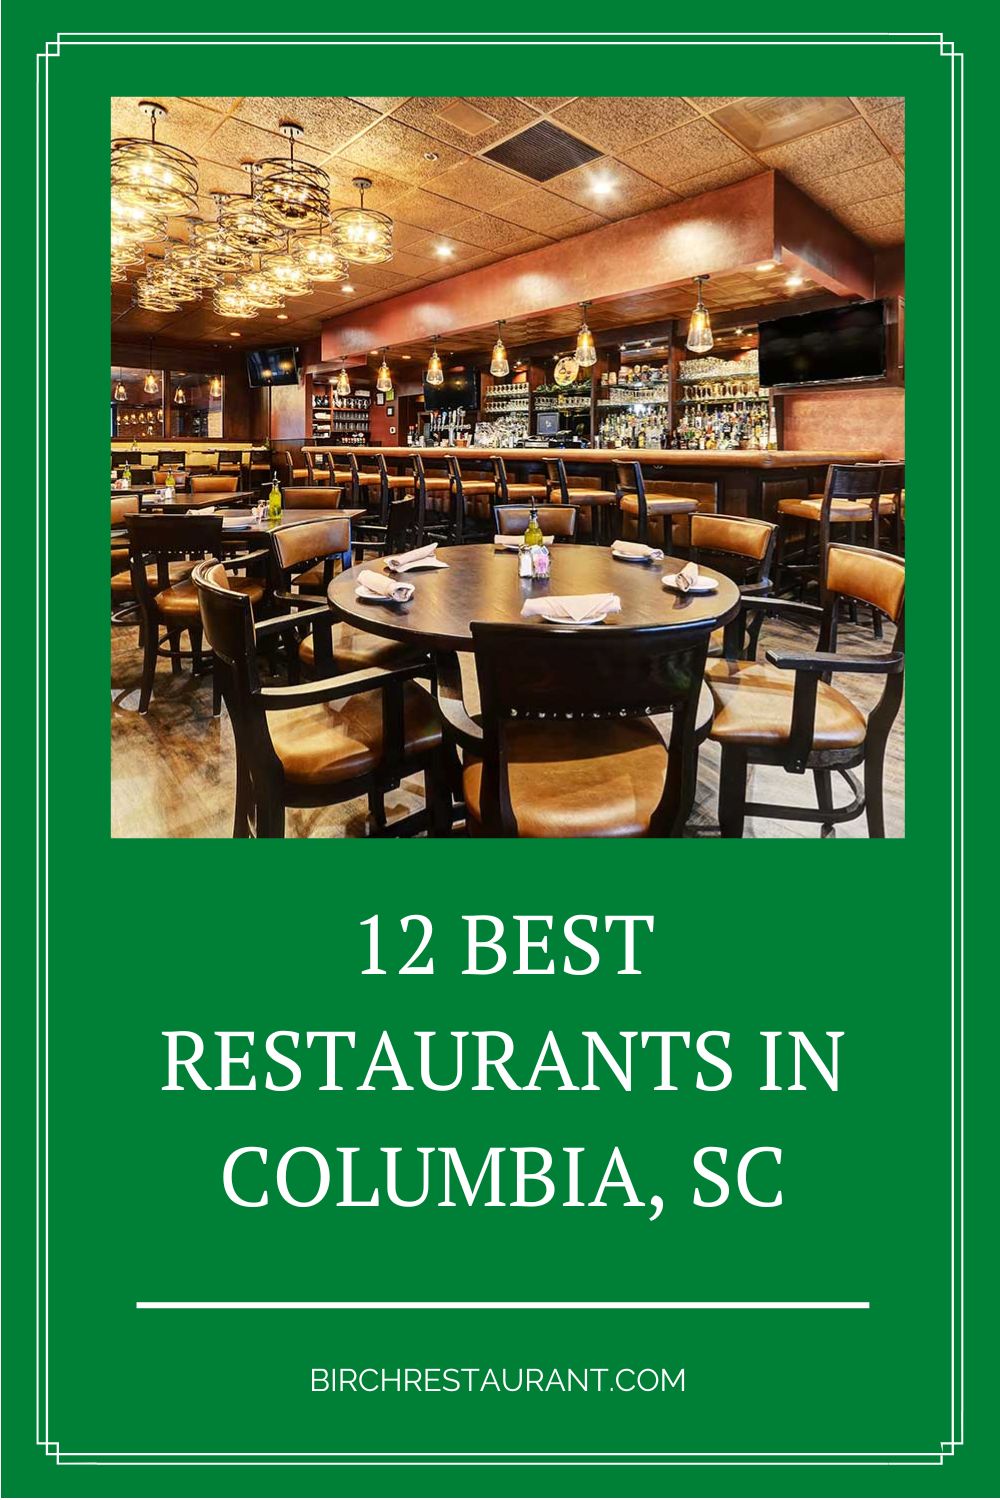 Best Restaurants in Columbia